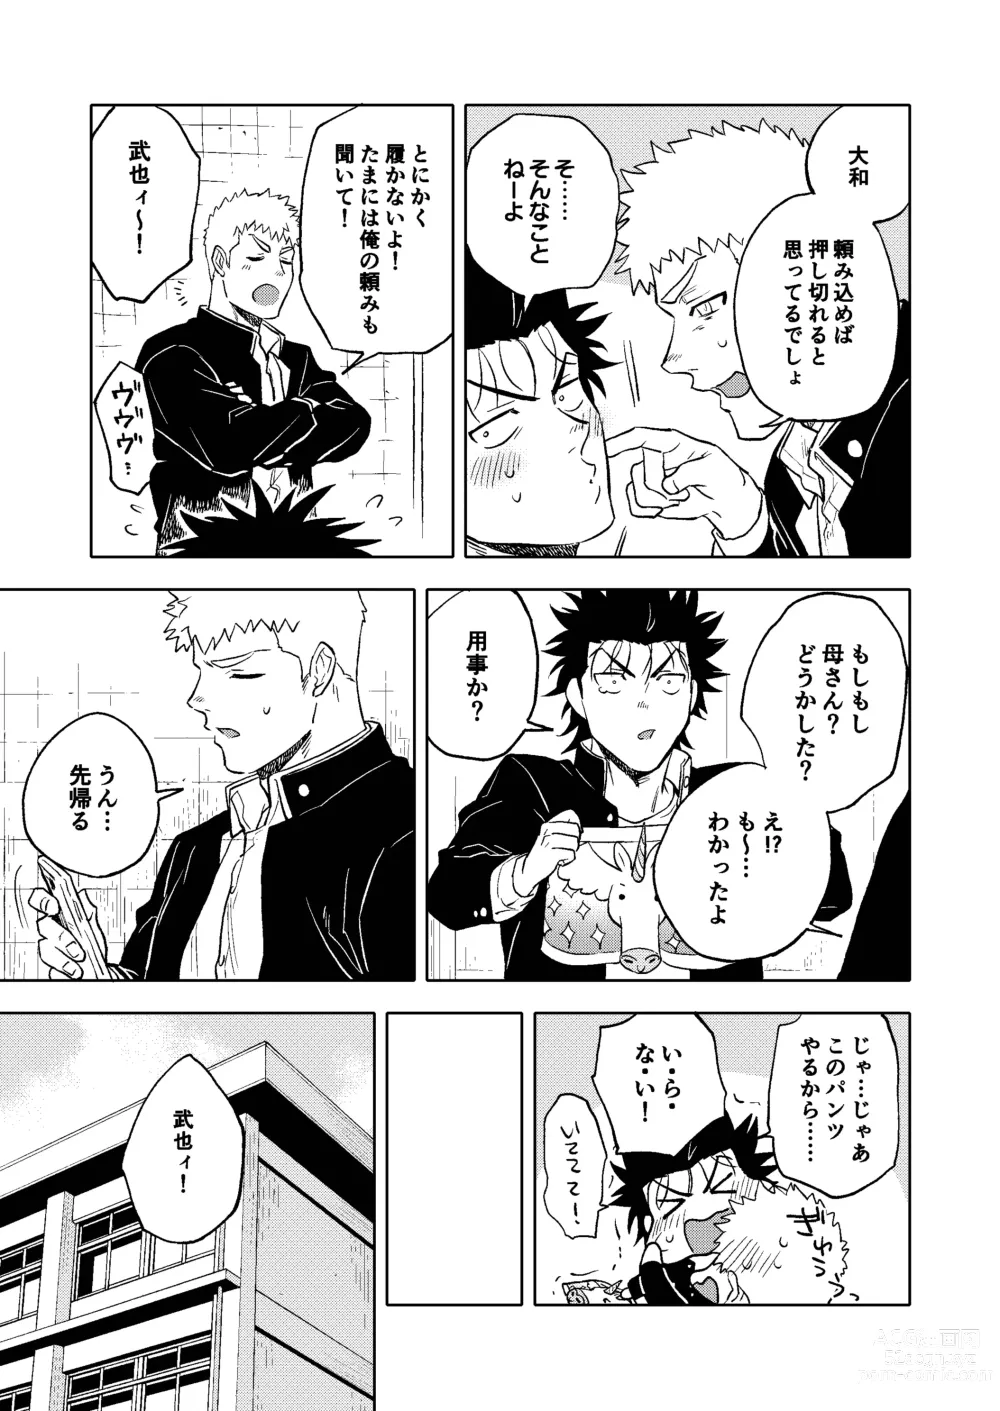 Page 4 of doujinshi Dainarishounari 2